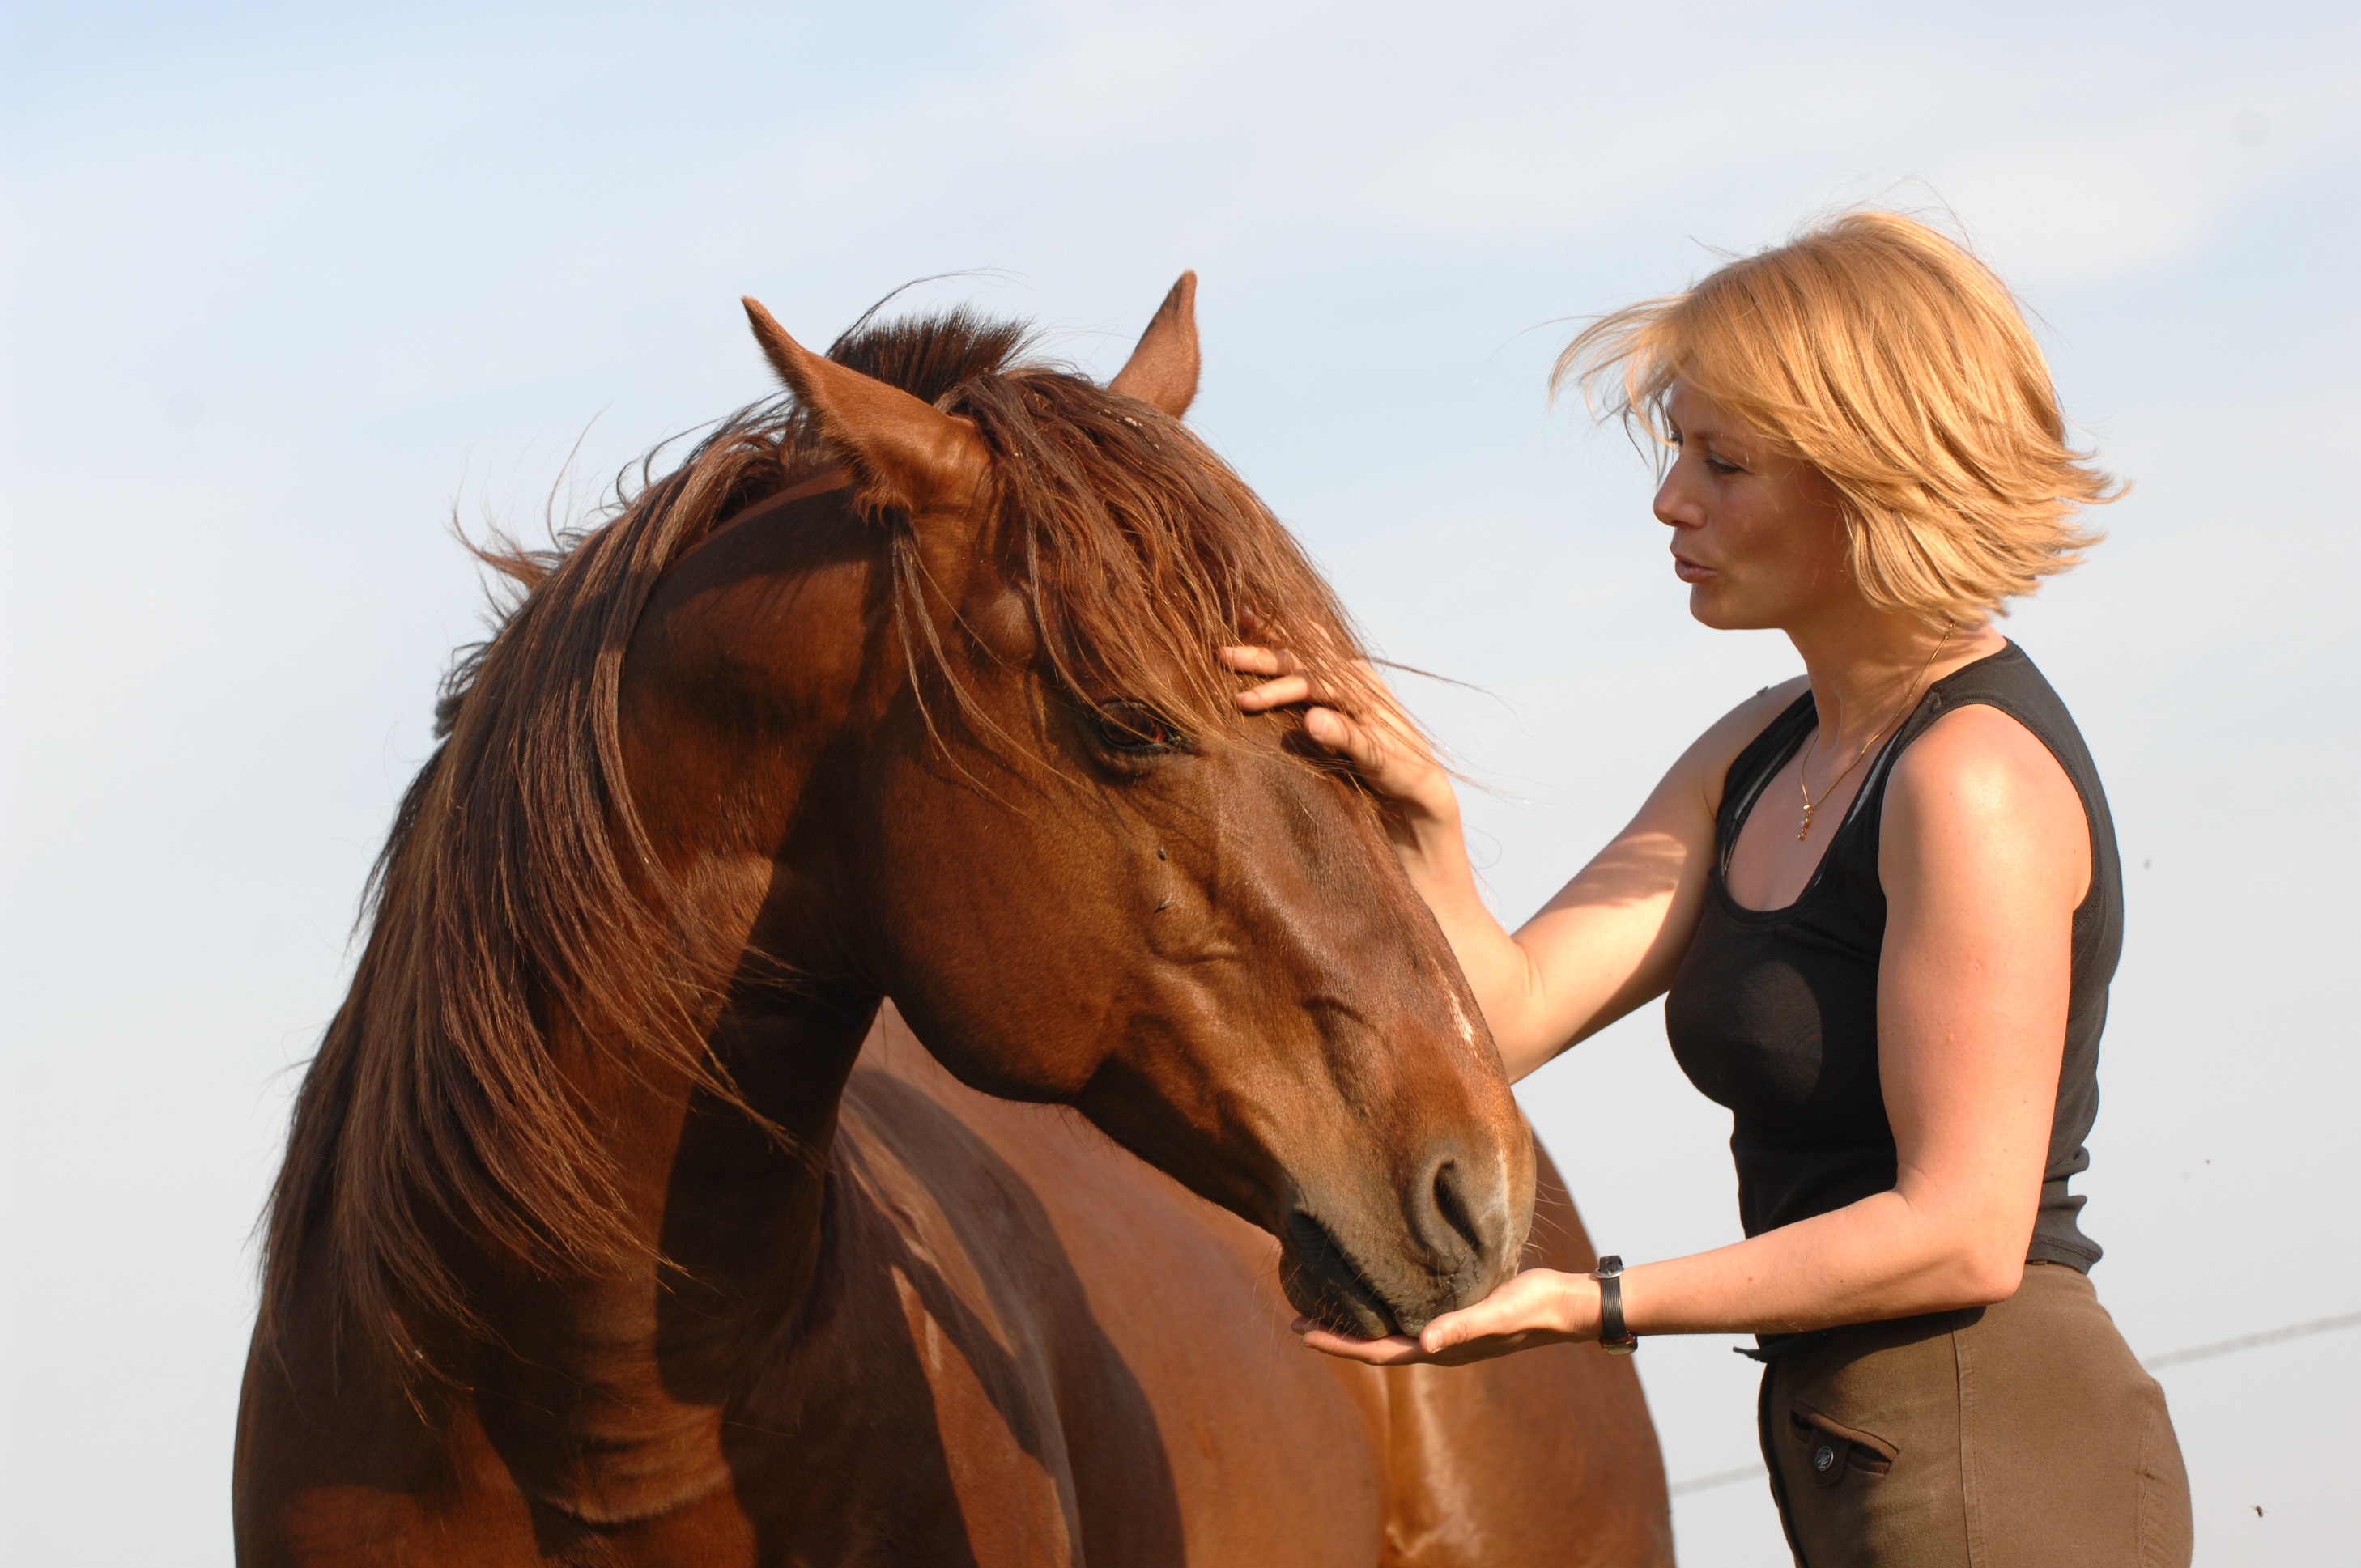 Les nouveaux équipements d'équitation innovants - HorseLab